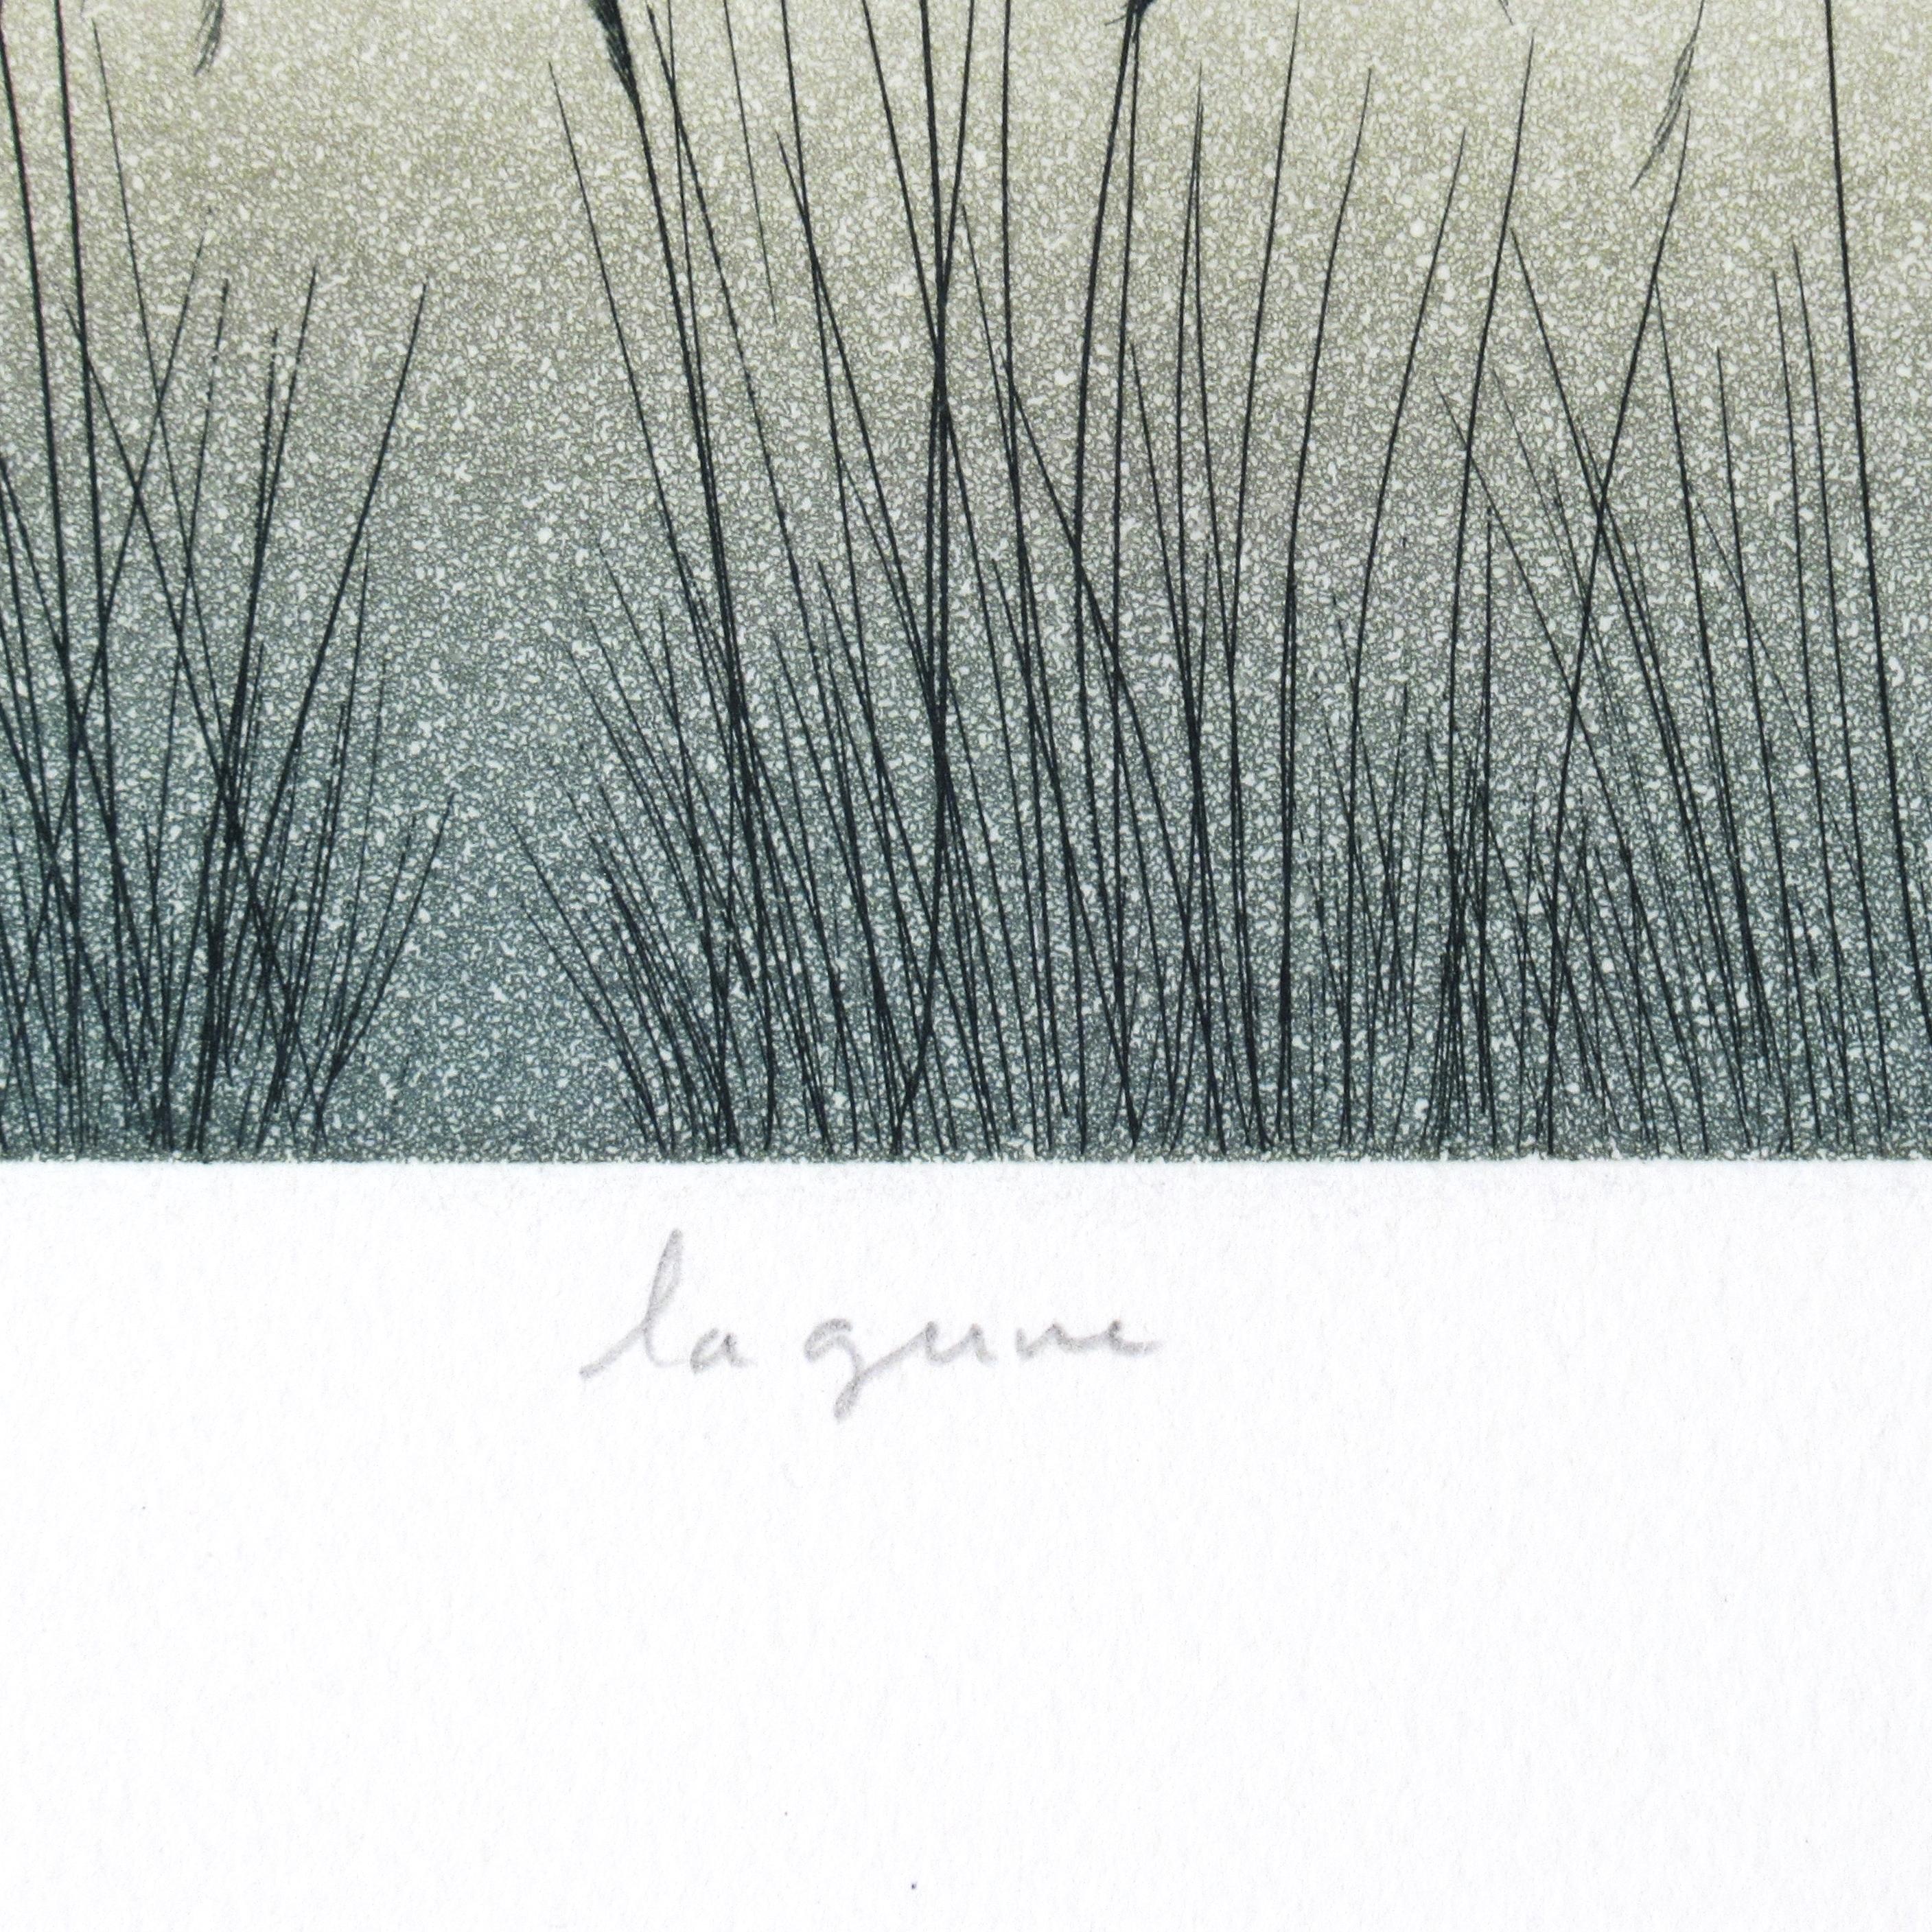 Lagune - Surrealist Print by Jean Solombre